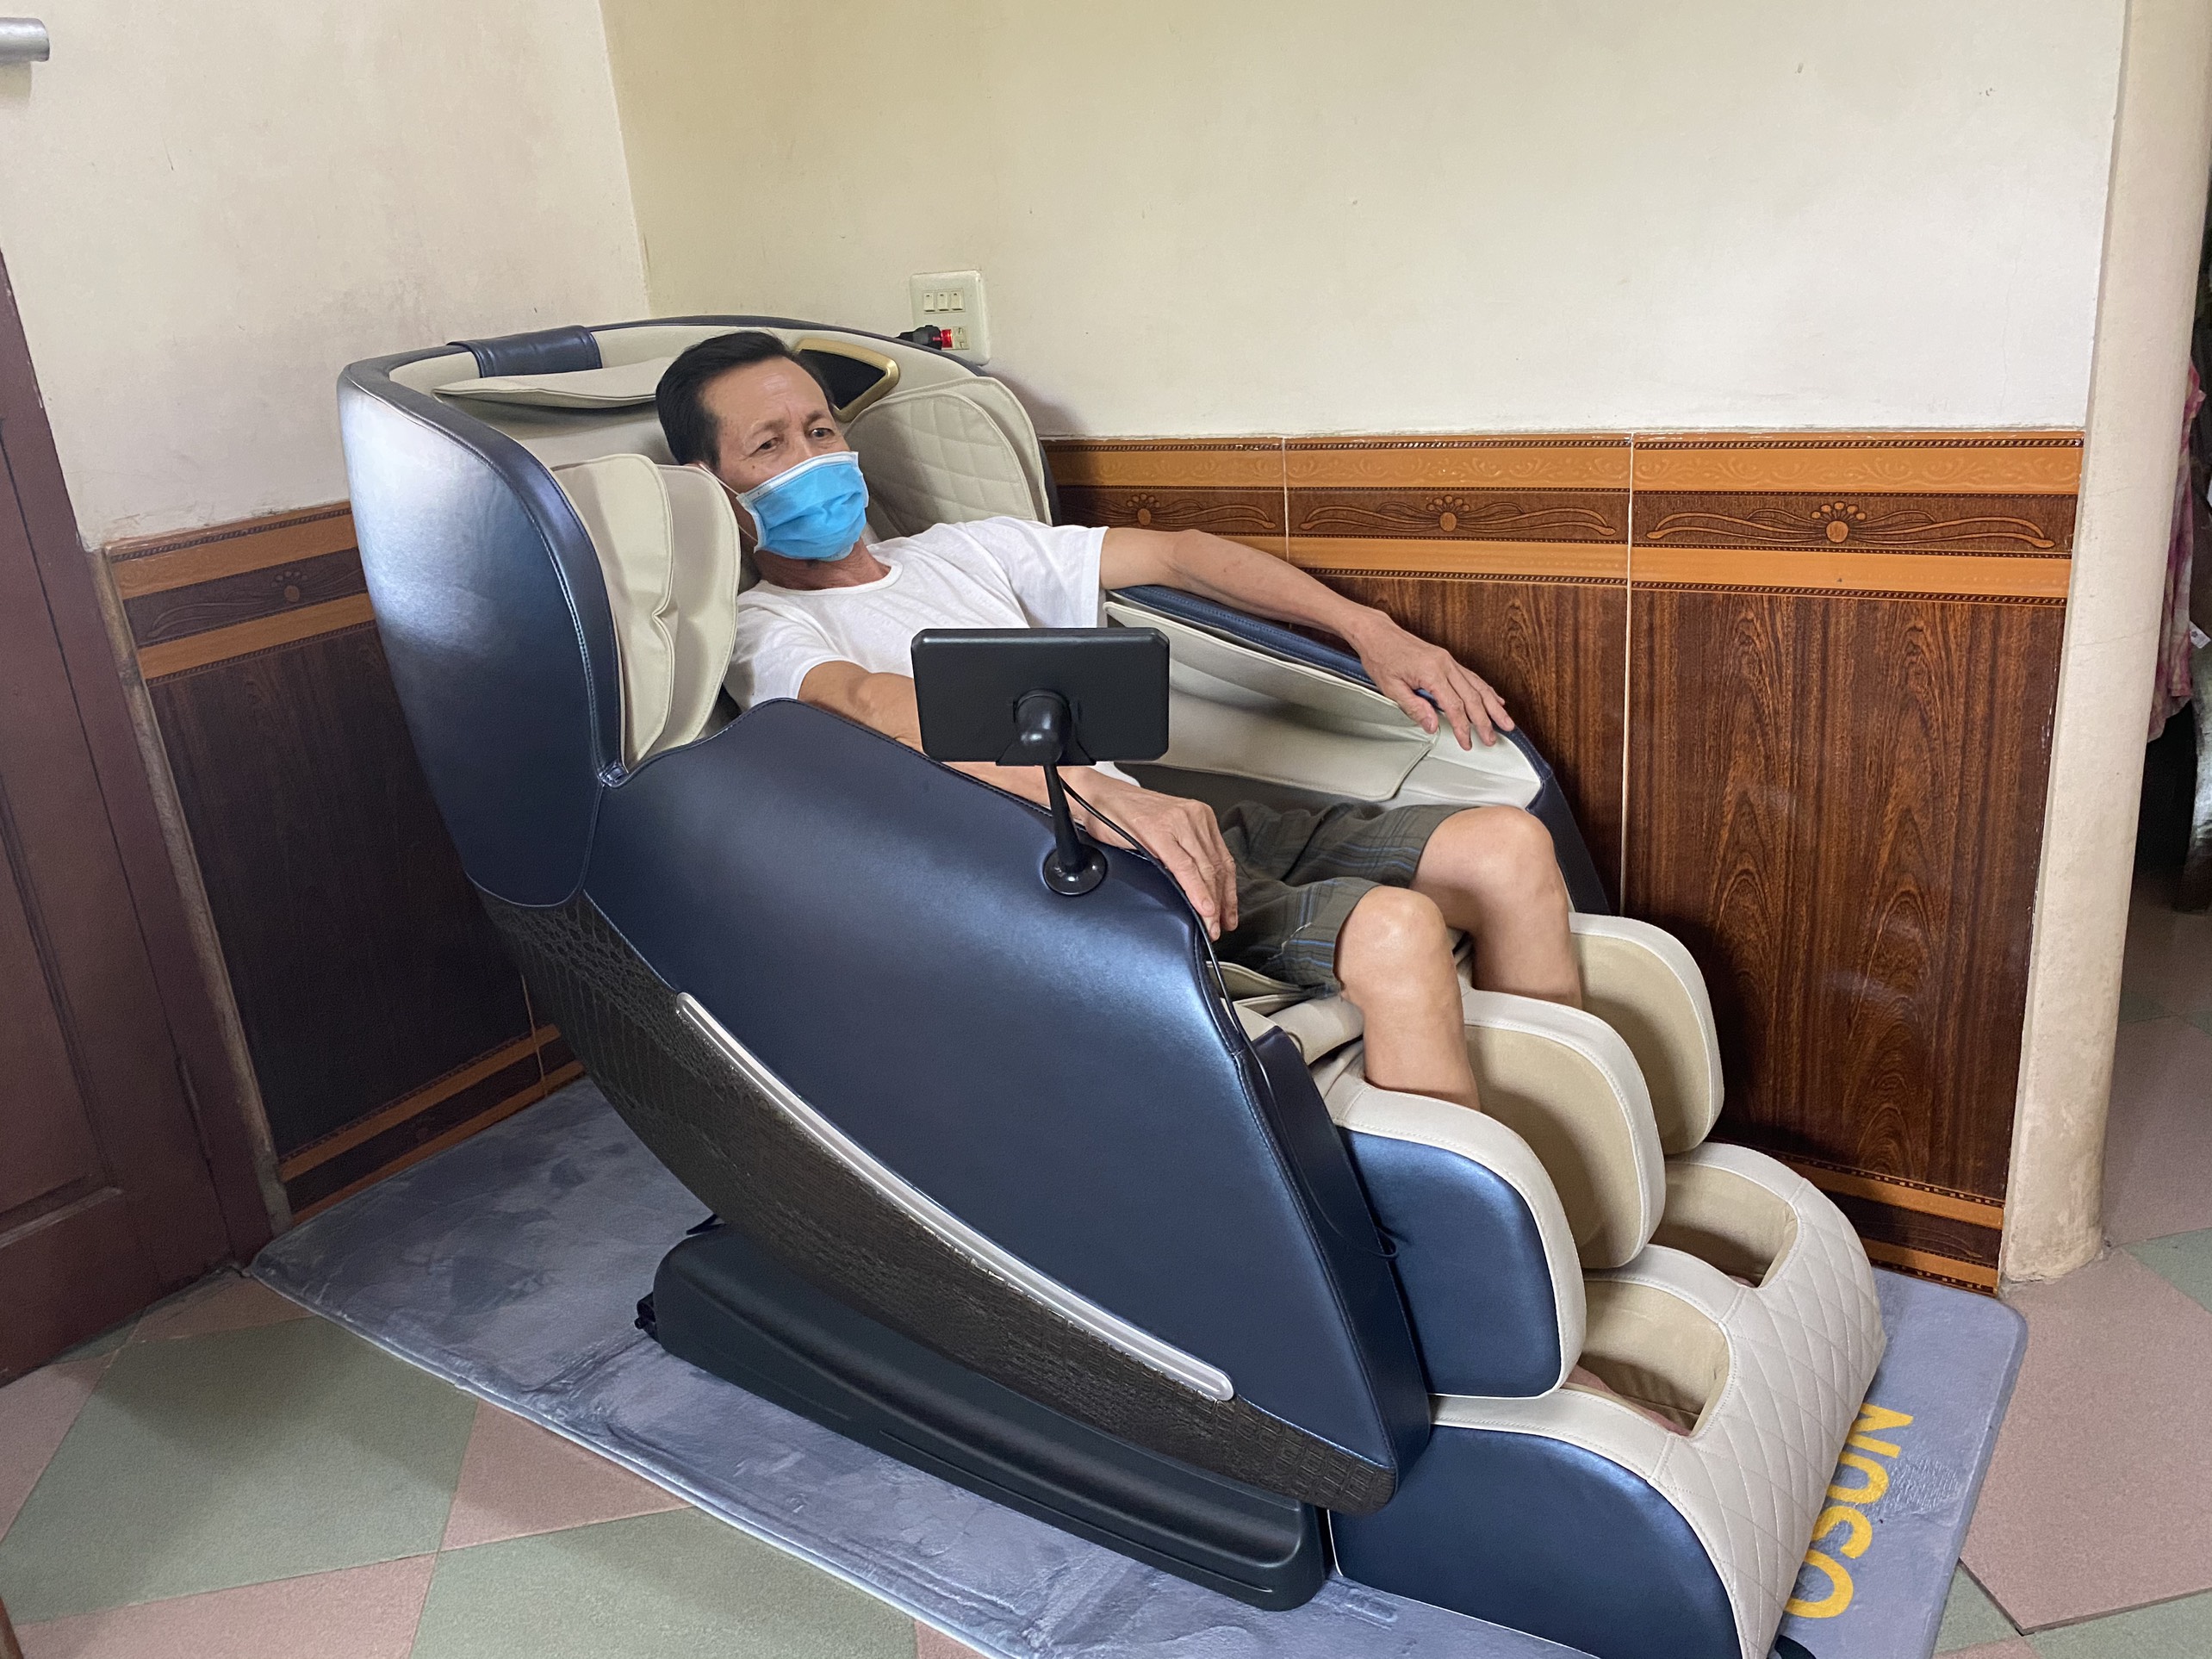 Ghế massage toàn thân OSUN SK-266 Tặng kèm Xe đạp tập + Bạt phủ ghế + Bình xịt vệ sinh ghế + Thảm kê ghế